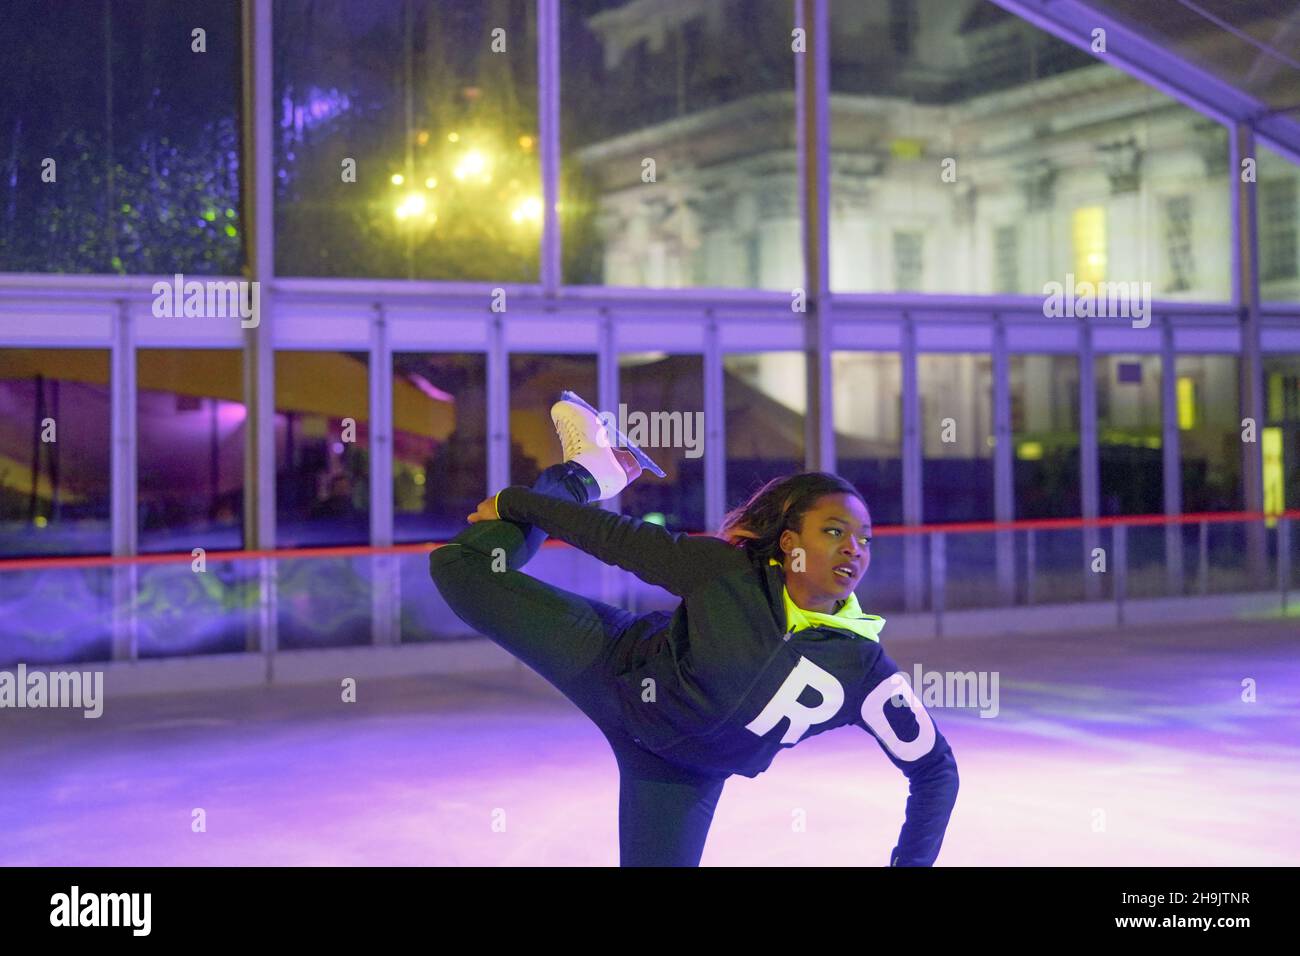 Die französische Eisstänkerin Aretha Silete tritt am Eröffnungsabend des Greenwich Wintertime Festivals im Greenwich College in London auf der Eisbahn auf. Fototermin: Mittwoch, 6. Dezember 2017. Bildnachweis sollte lauten: Richard Gray/EMPICS Entertainment. Stockfoto